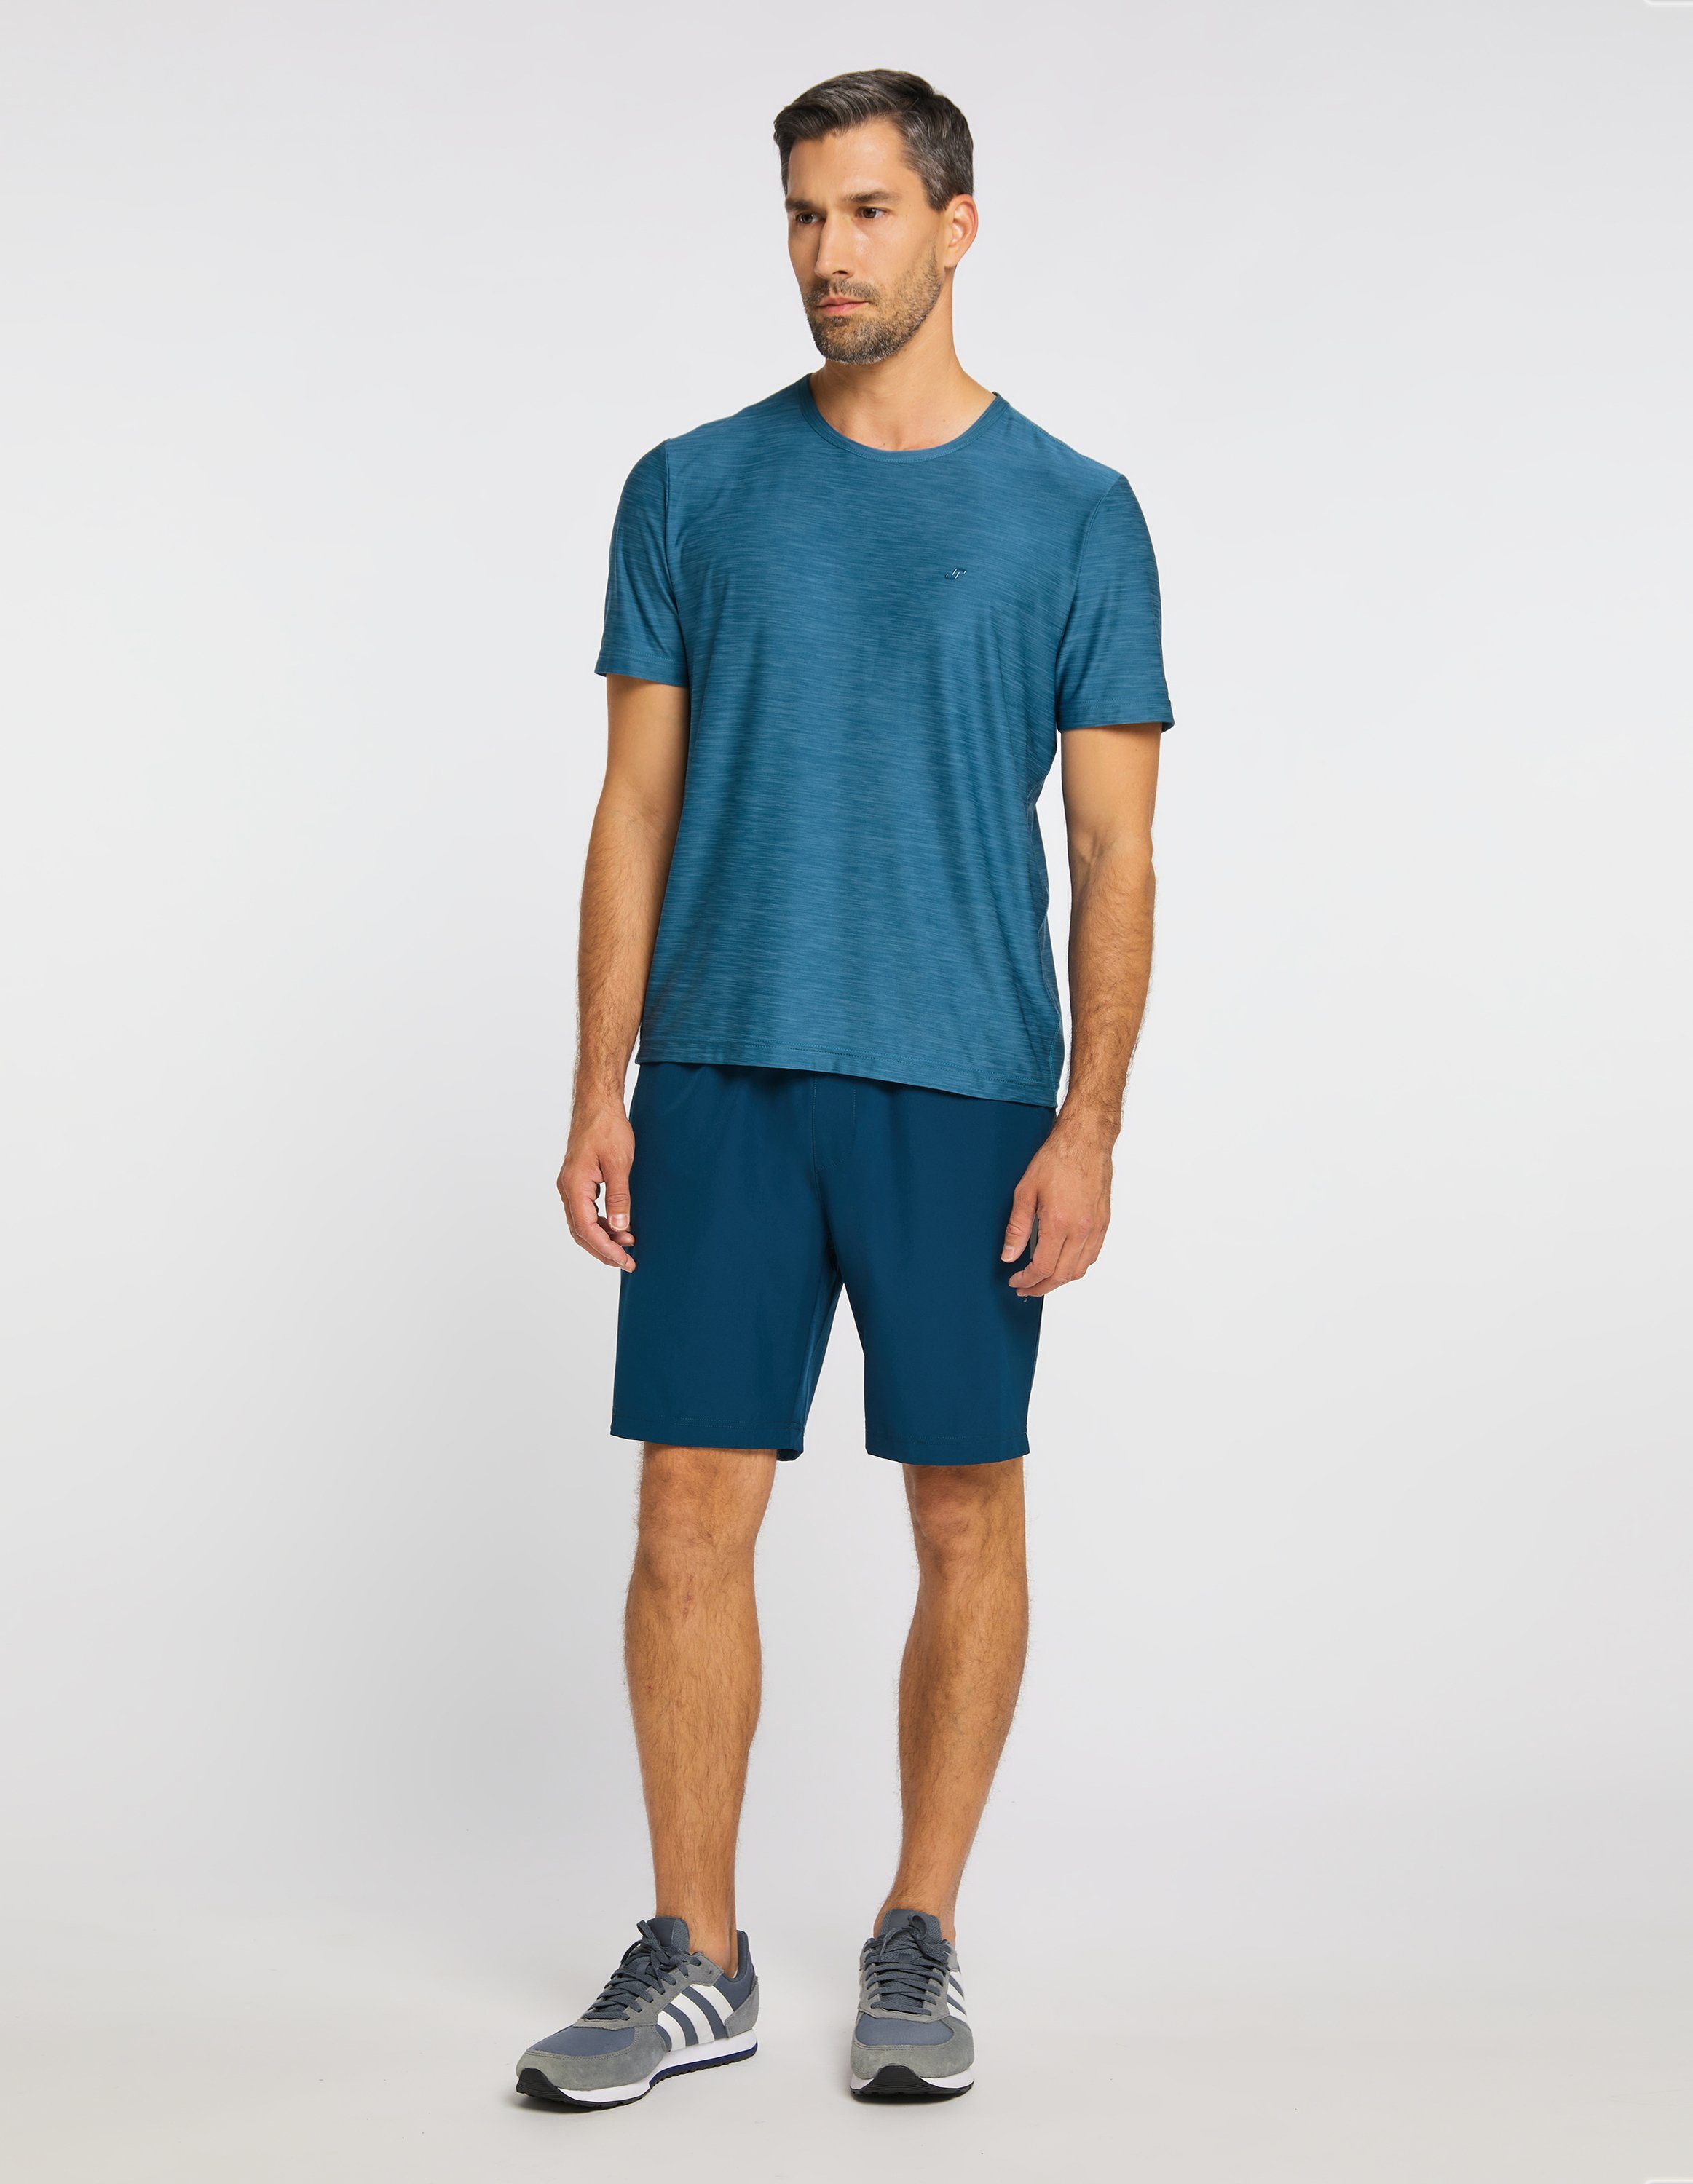 metallic Joy T-Shirt blue Sportswear melange T-Shirt VITUS